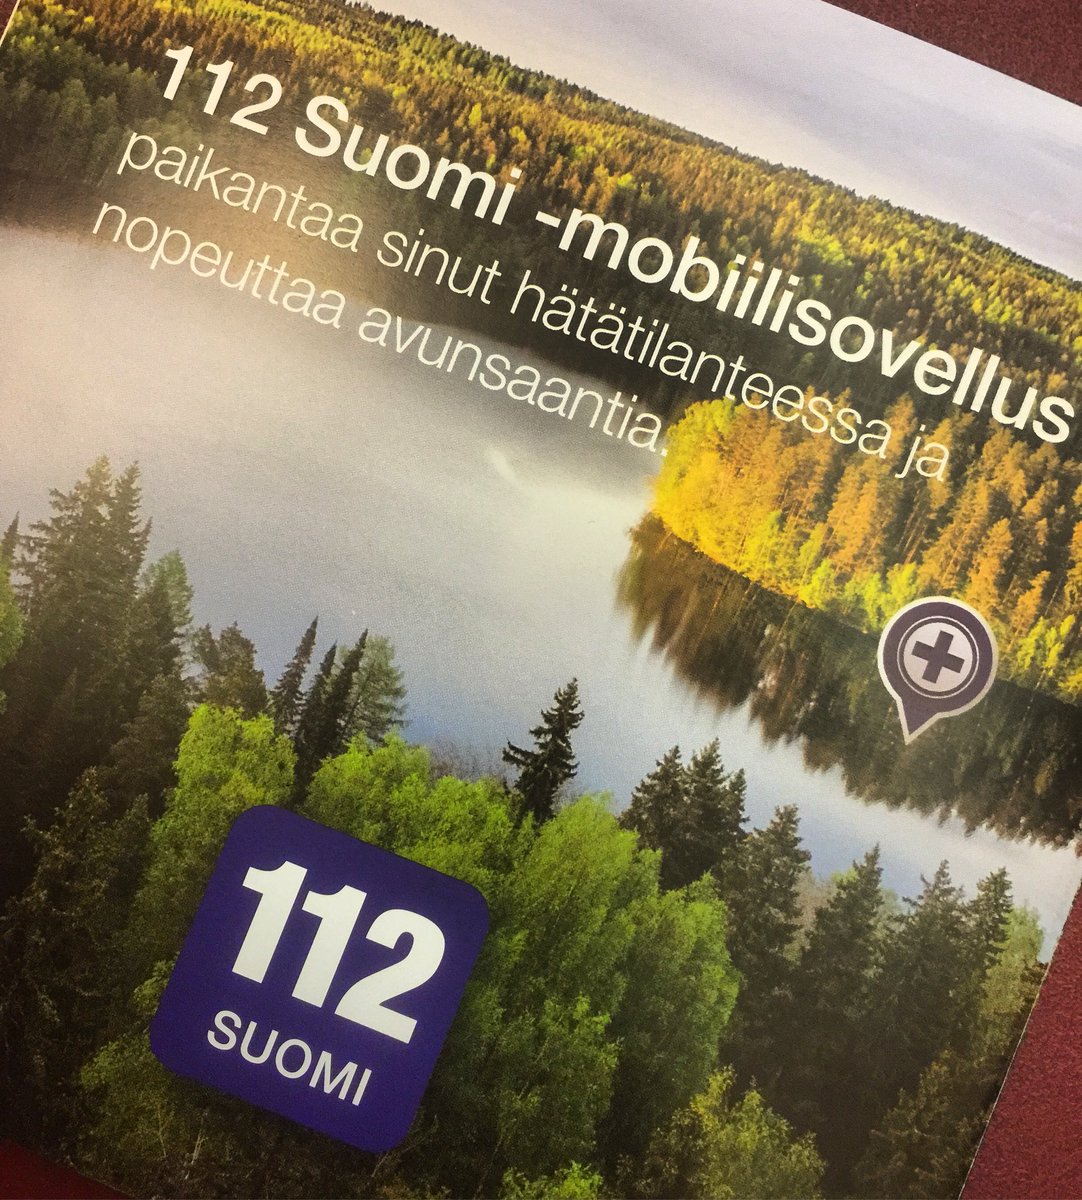 Hirvimerkki! -kampanjakiertue 2017 Joko sinulla on puhelimessa 112 Suomi mobiilisovellus? @112_Finland @SPPL_ry @st1suomi @Trafi_Finland